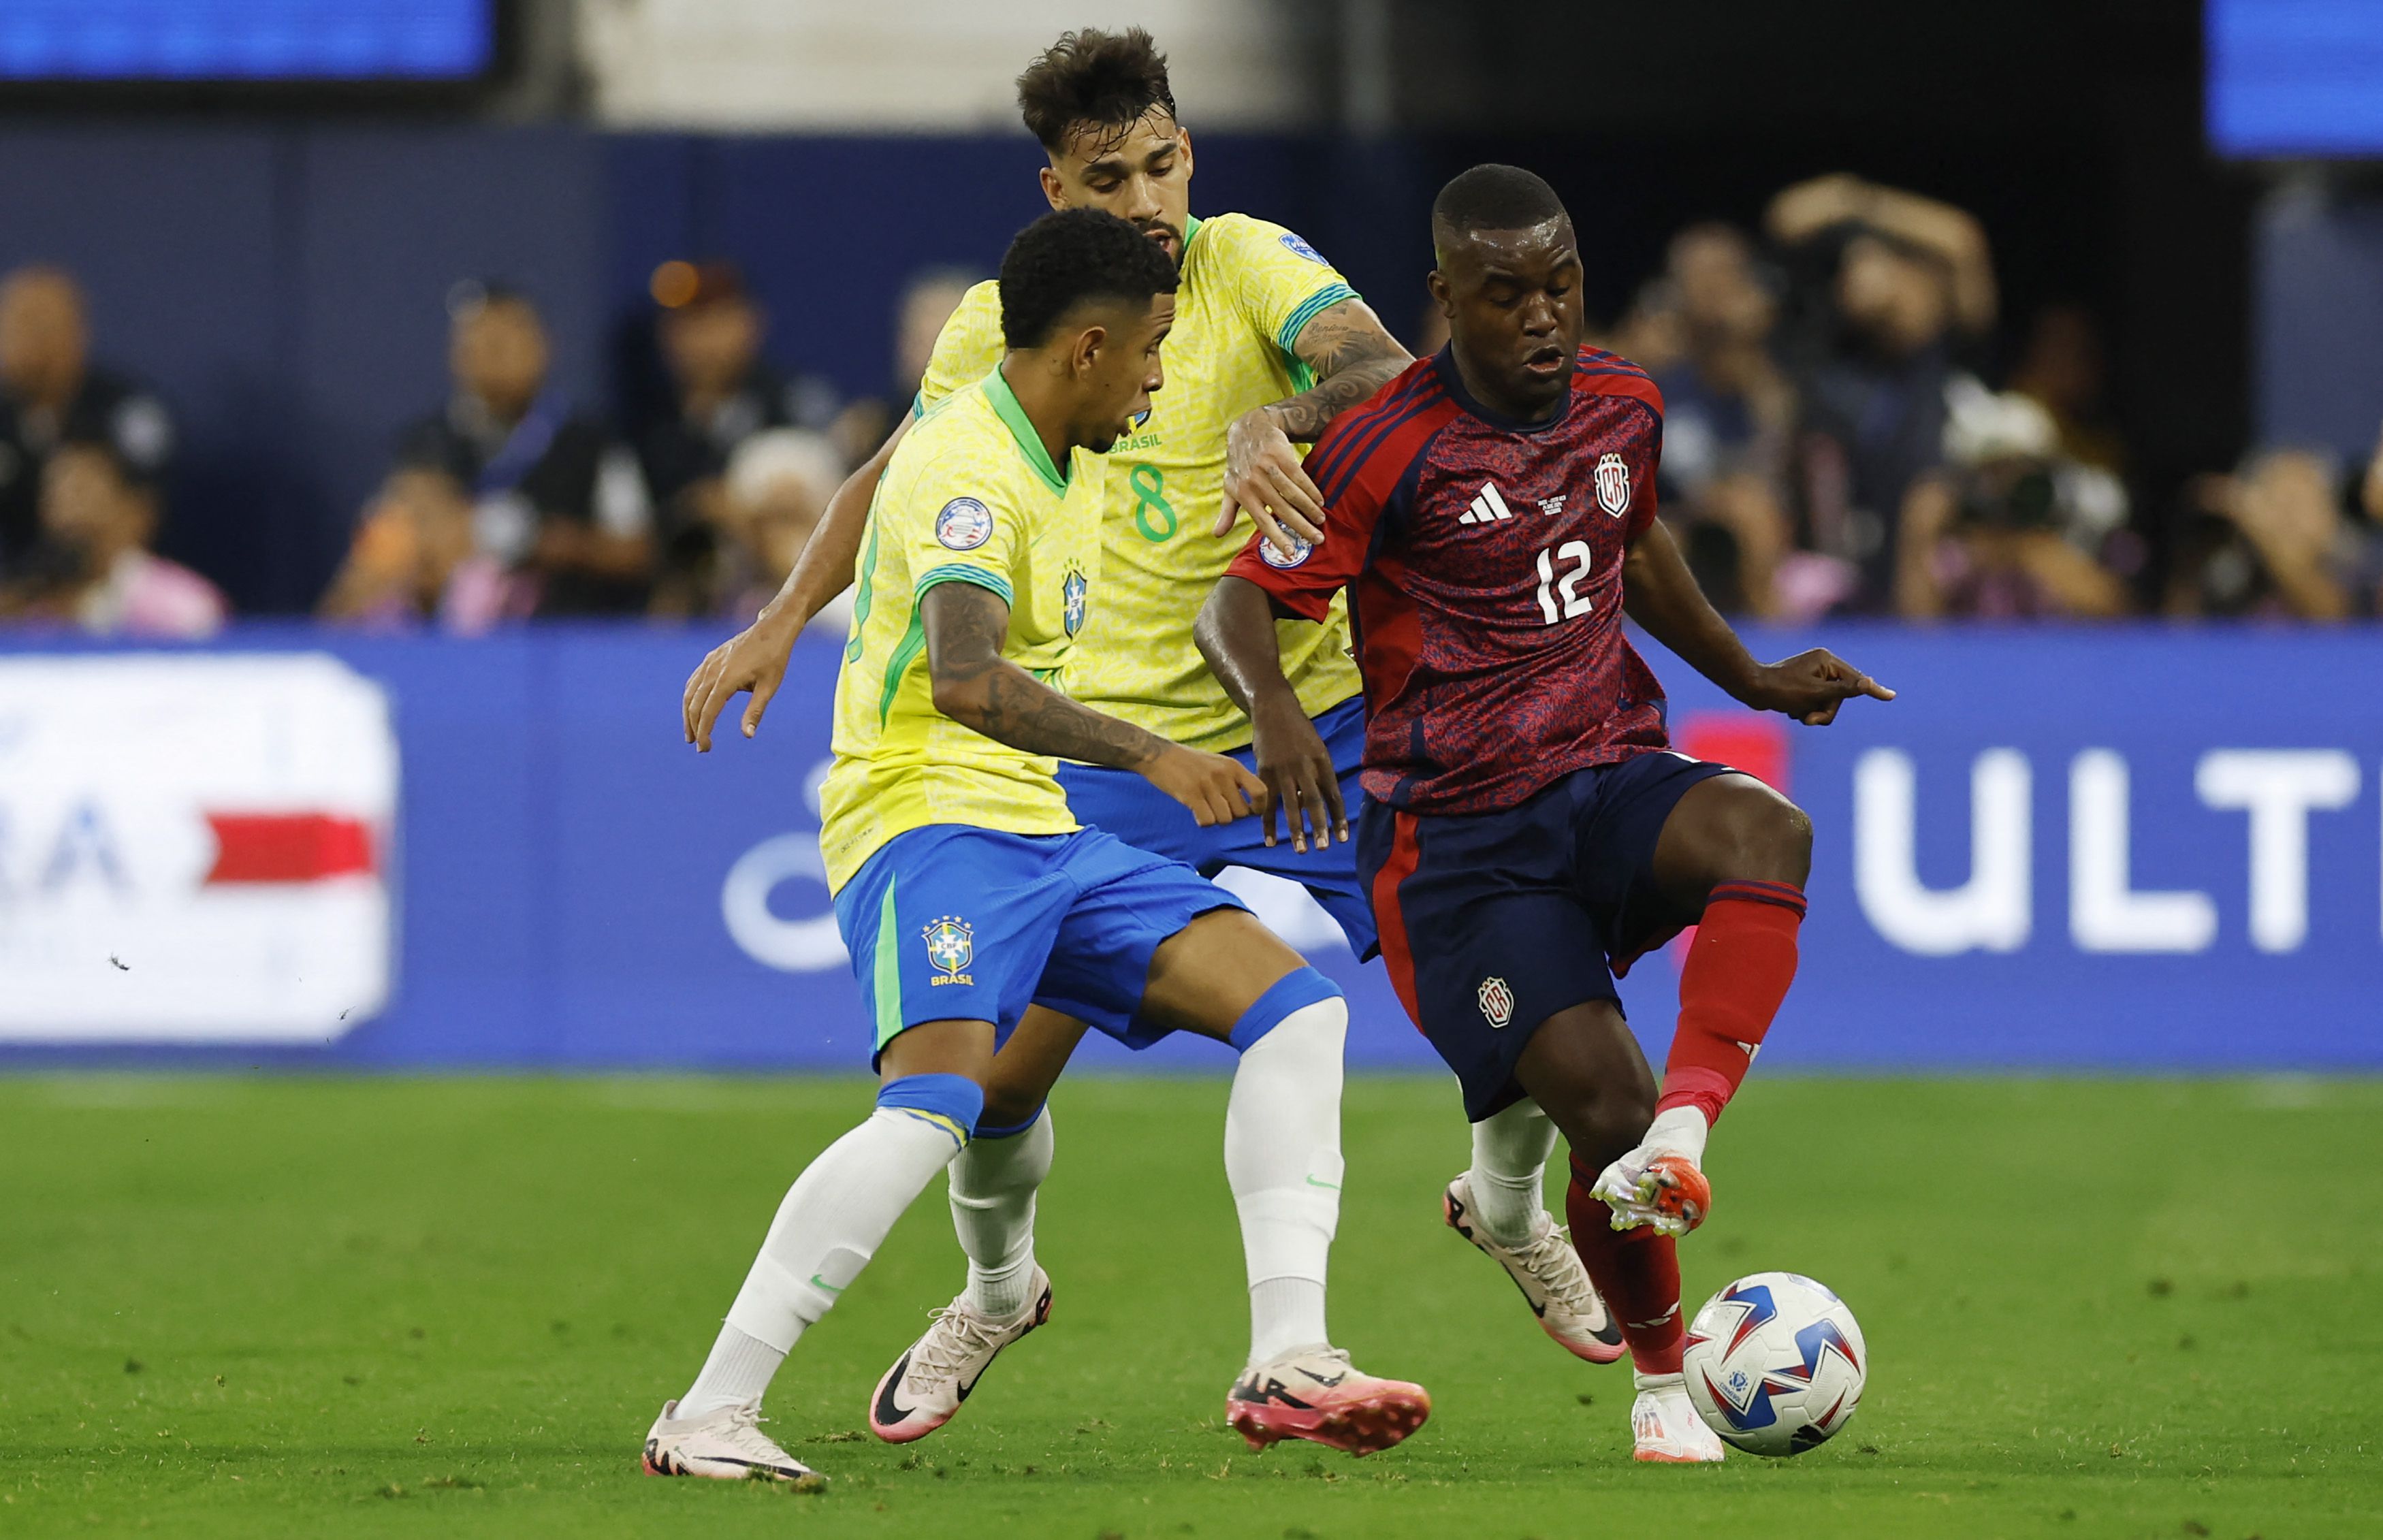 El “Olé, olé, olé” de los fanáticos de la Selección de Costa Rica a Brasil que da vuelta al mundo